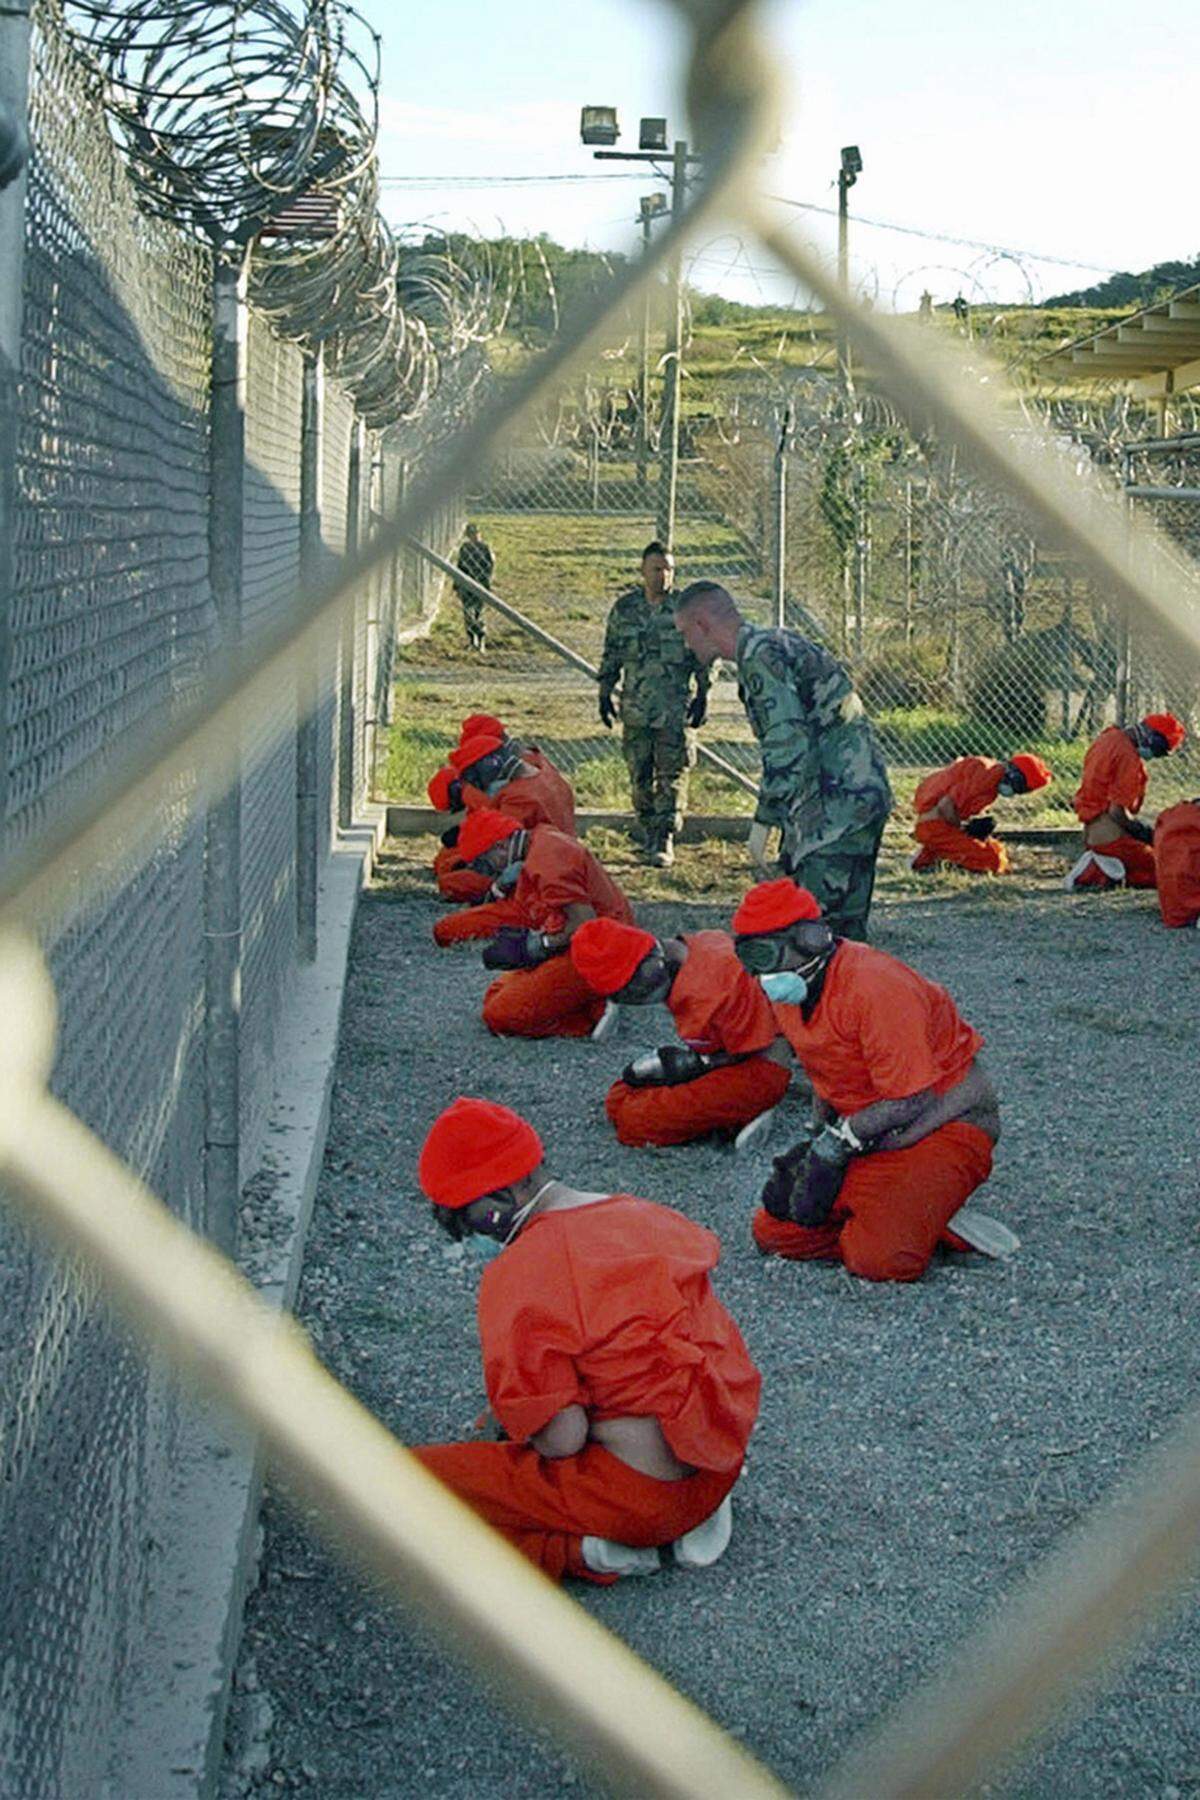 Weiters beinhaltet der NDAA Einzelregelungen, die in Summe dafür Sorge tragen, dass die Schließung des Gefangenenlagers Guantanamo quasi unmöglich ist. So darf etwa kein Regierungsgeld dafür verwendet werden, die verbleibenden Gefangenen auf US-Festland zu bringen.